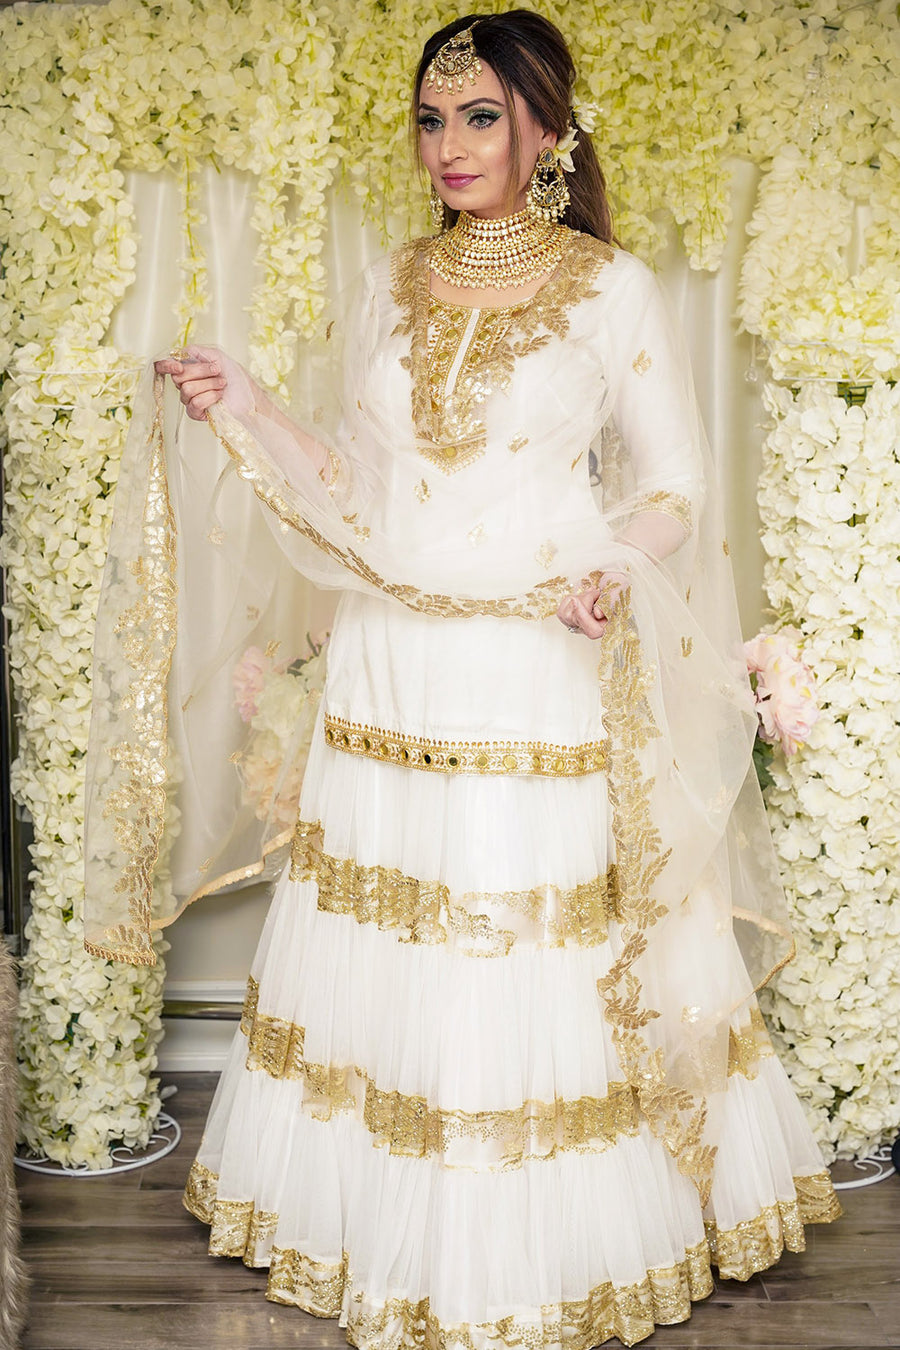 Gorgeous white and gold wedding lehenga | Gold lace wedding dress, Two  piece wedding dress, Long wedding dresses